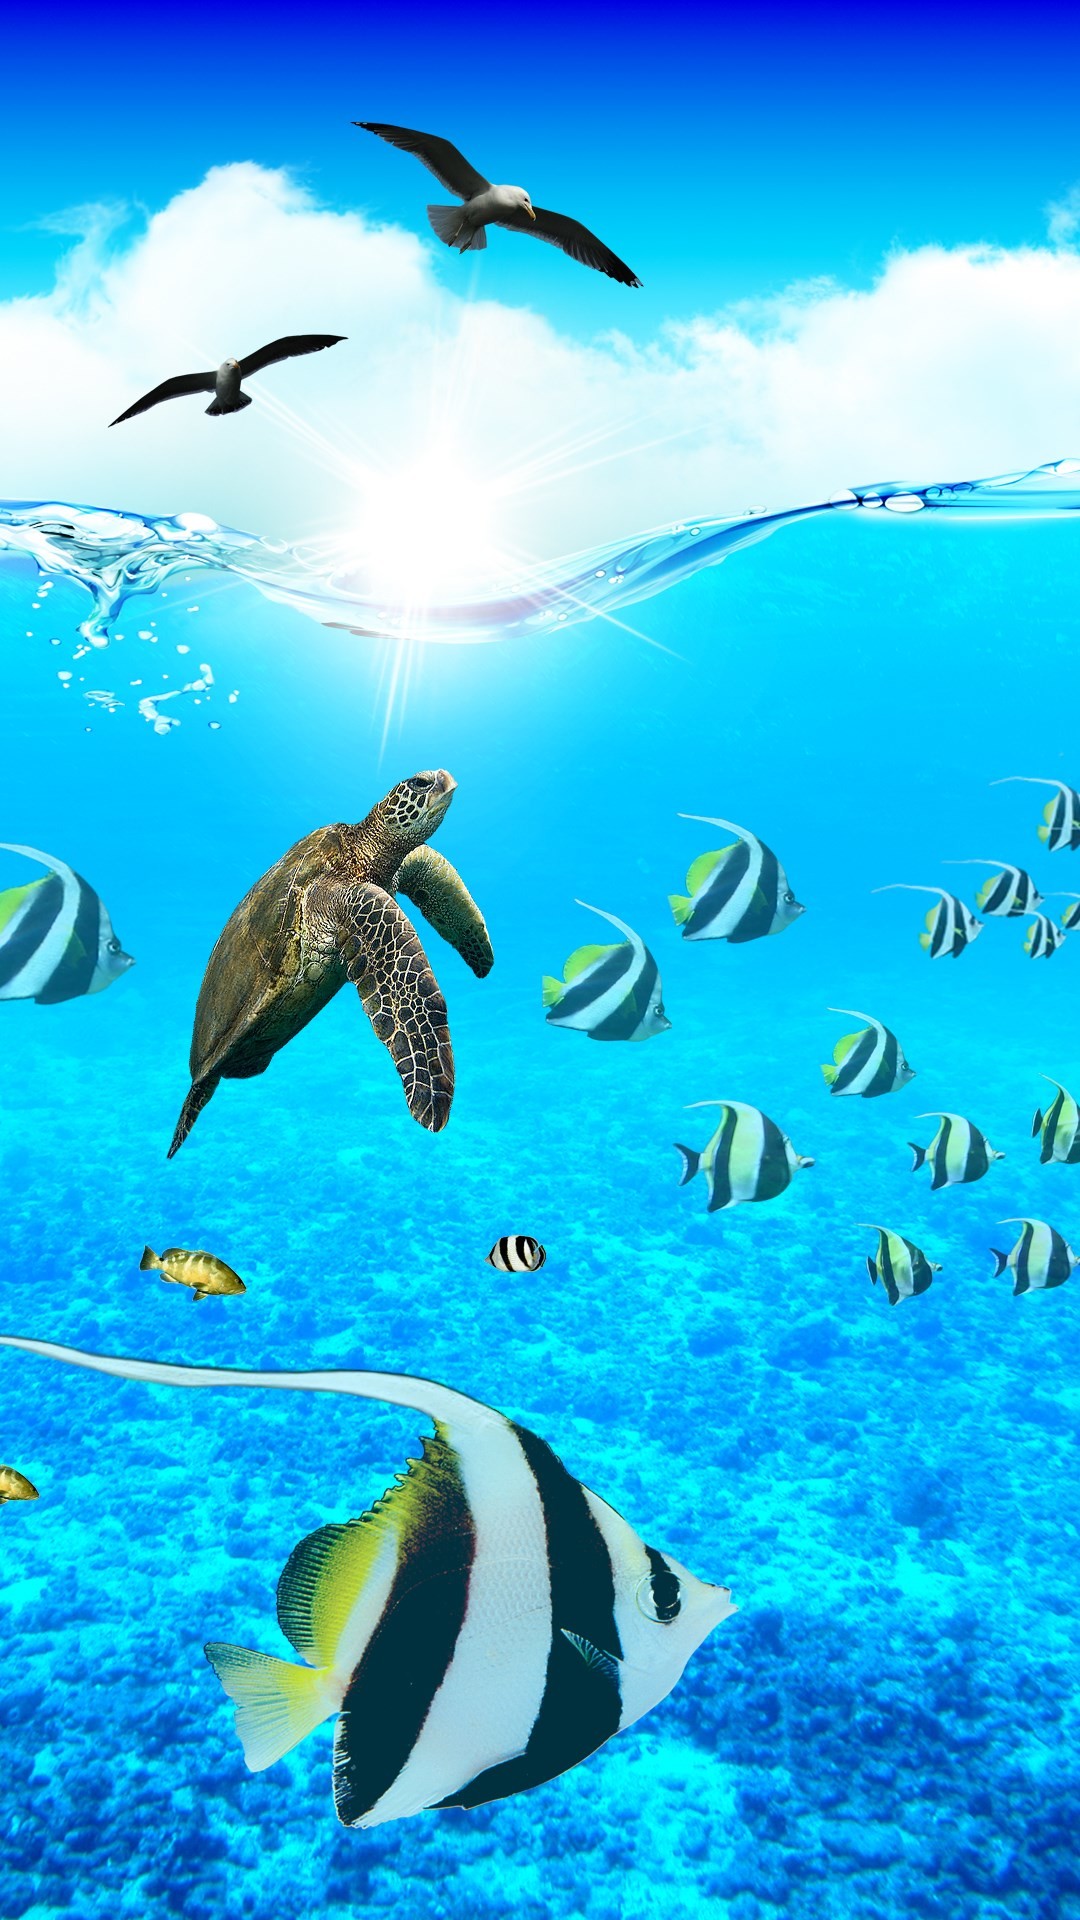 Ocean Aquarium. Paradise iPhone Wallpapers – mobile9 #underwater #animals # sea